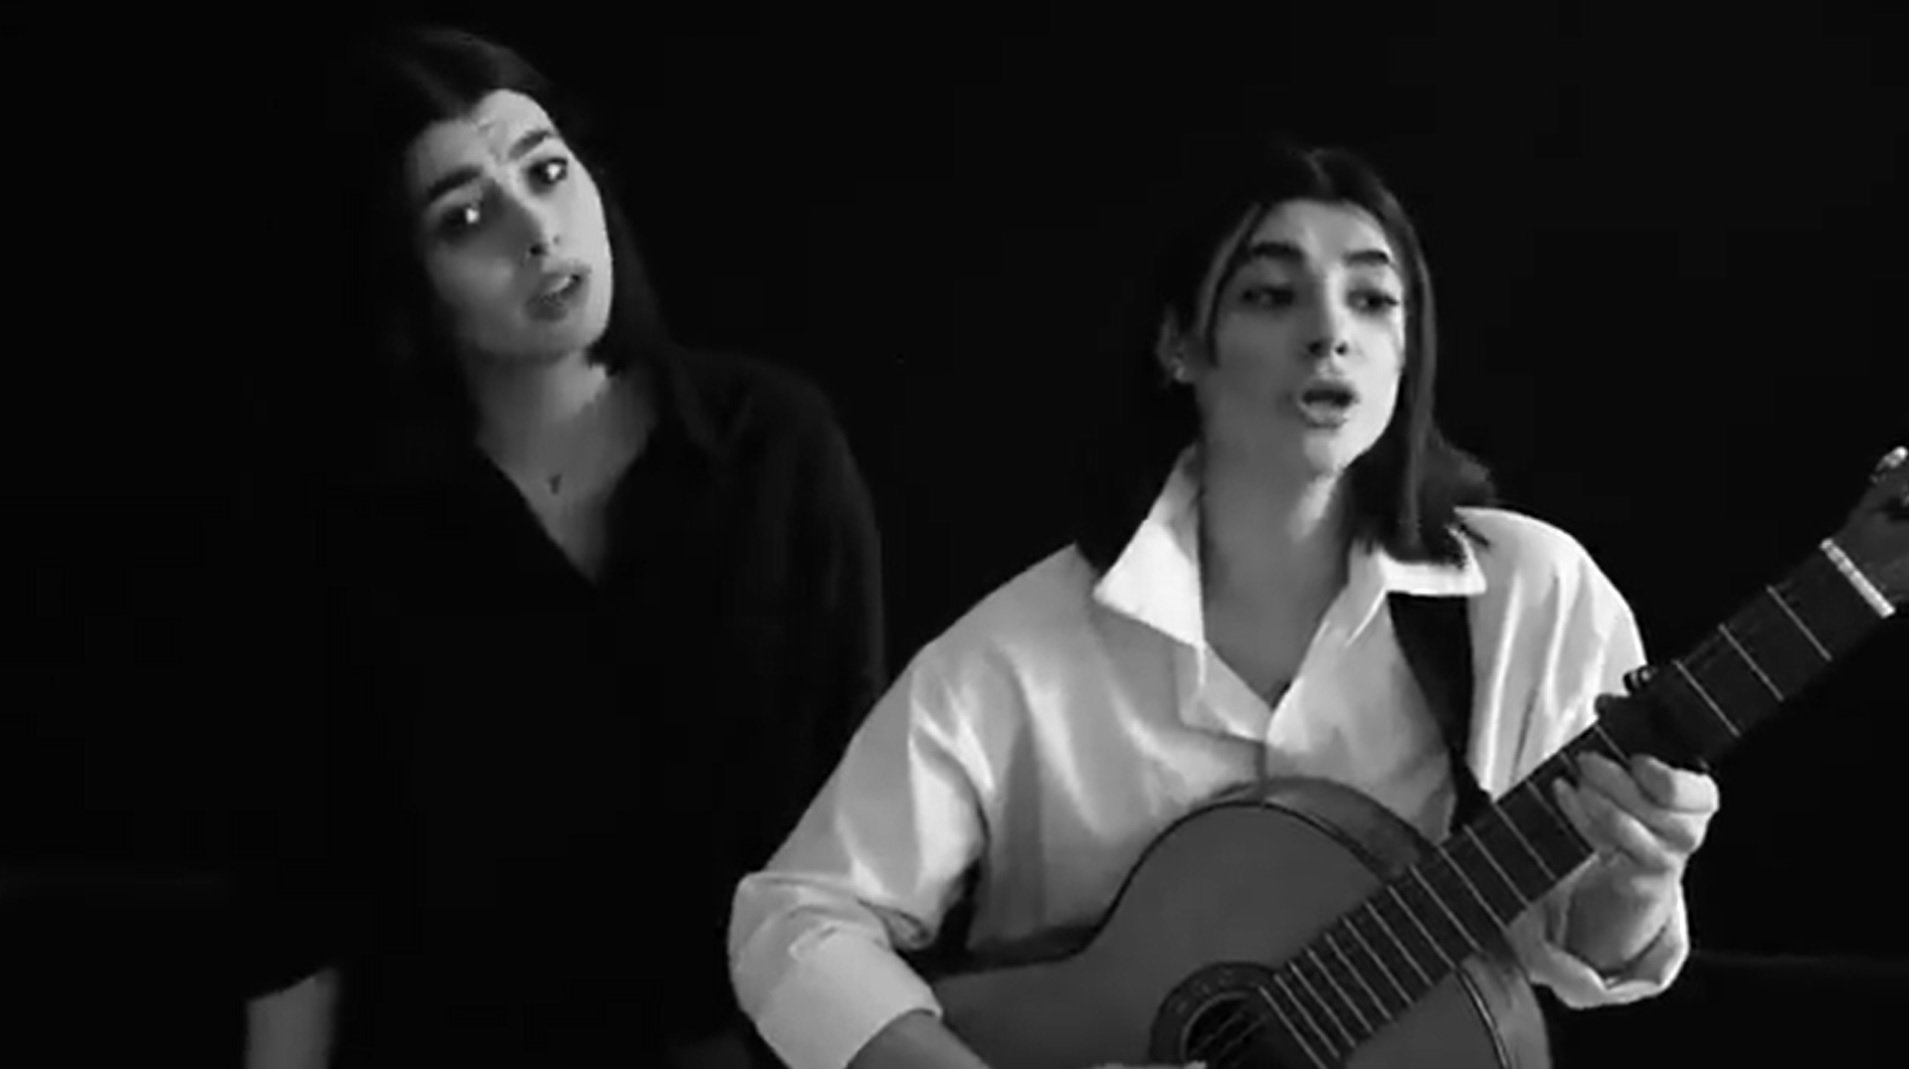 L'emotiu cant del 'Bella Ciao' en farsi de les noies iranianes | VÍDEO